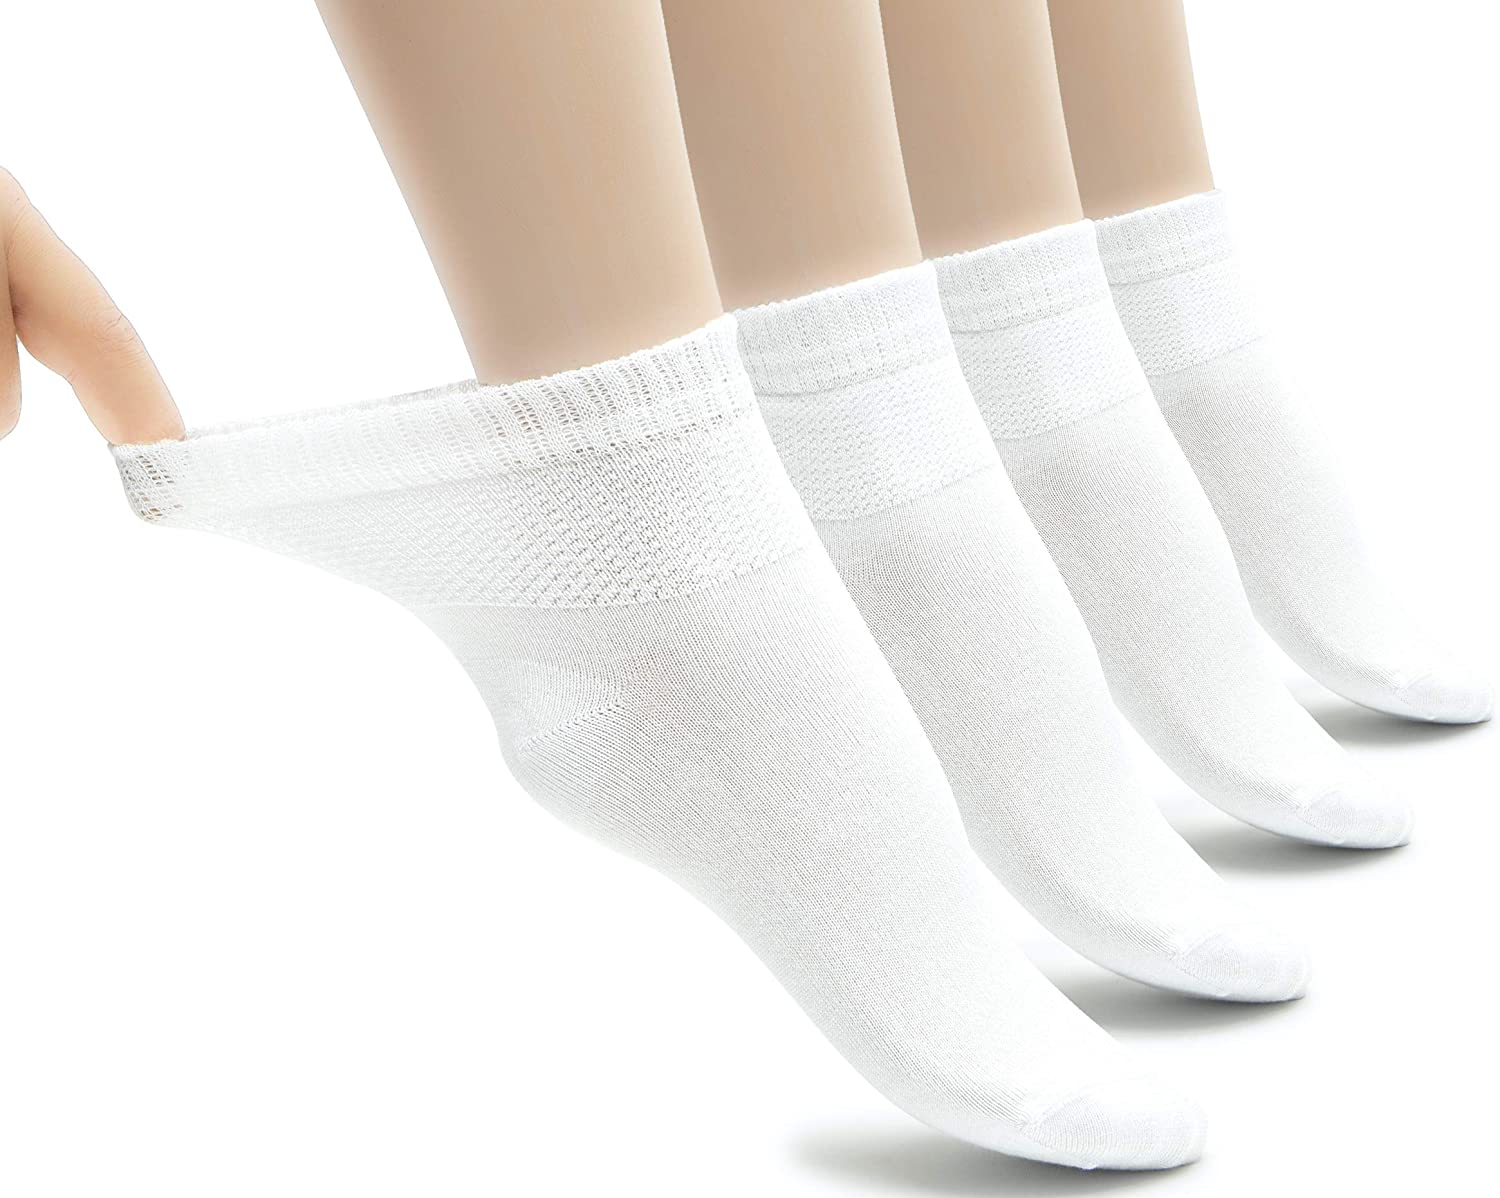 Hugh Ugoli Lightweight Women's Diabetic Ankle Socks Bamboo Thin, White ...